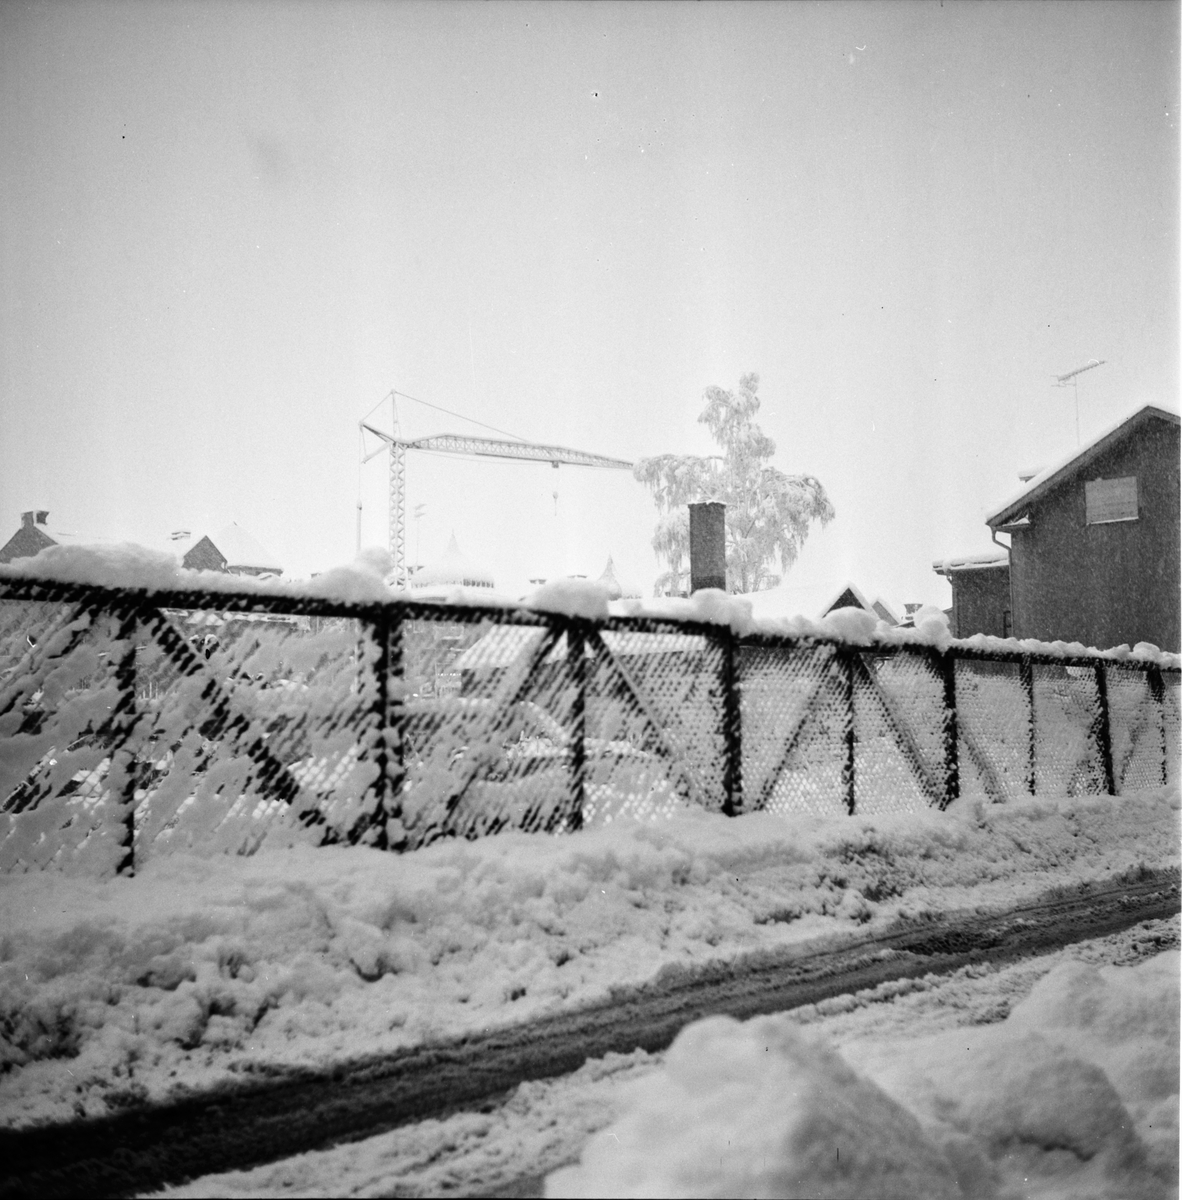 Snöbilder från Bollnäs.
3/1-1967